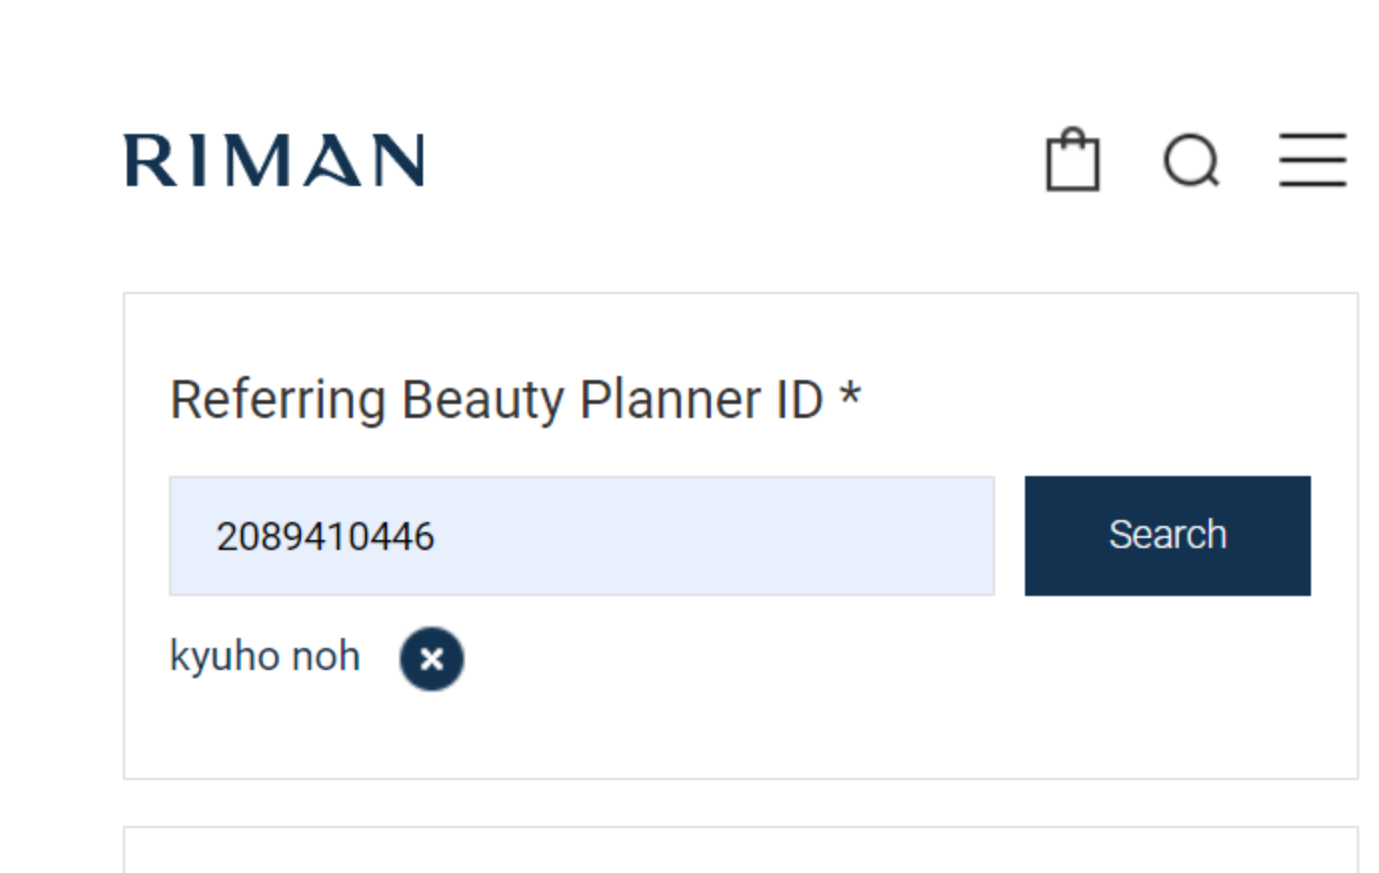 리만us referring beauty planner number 2089410446